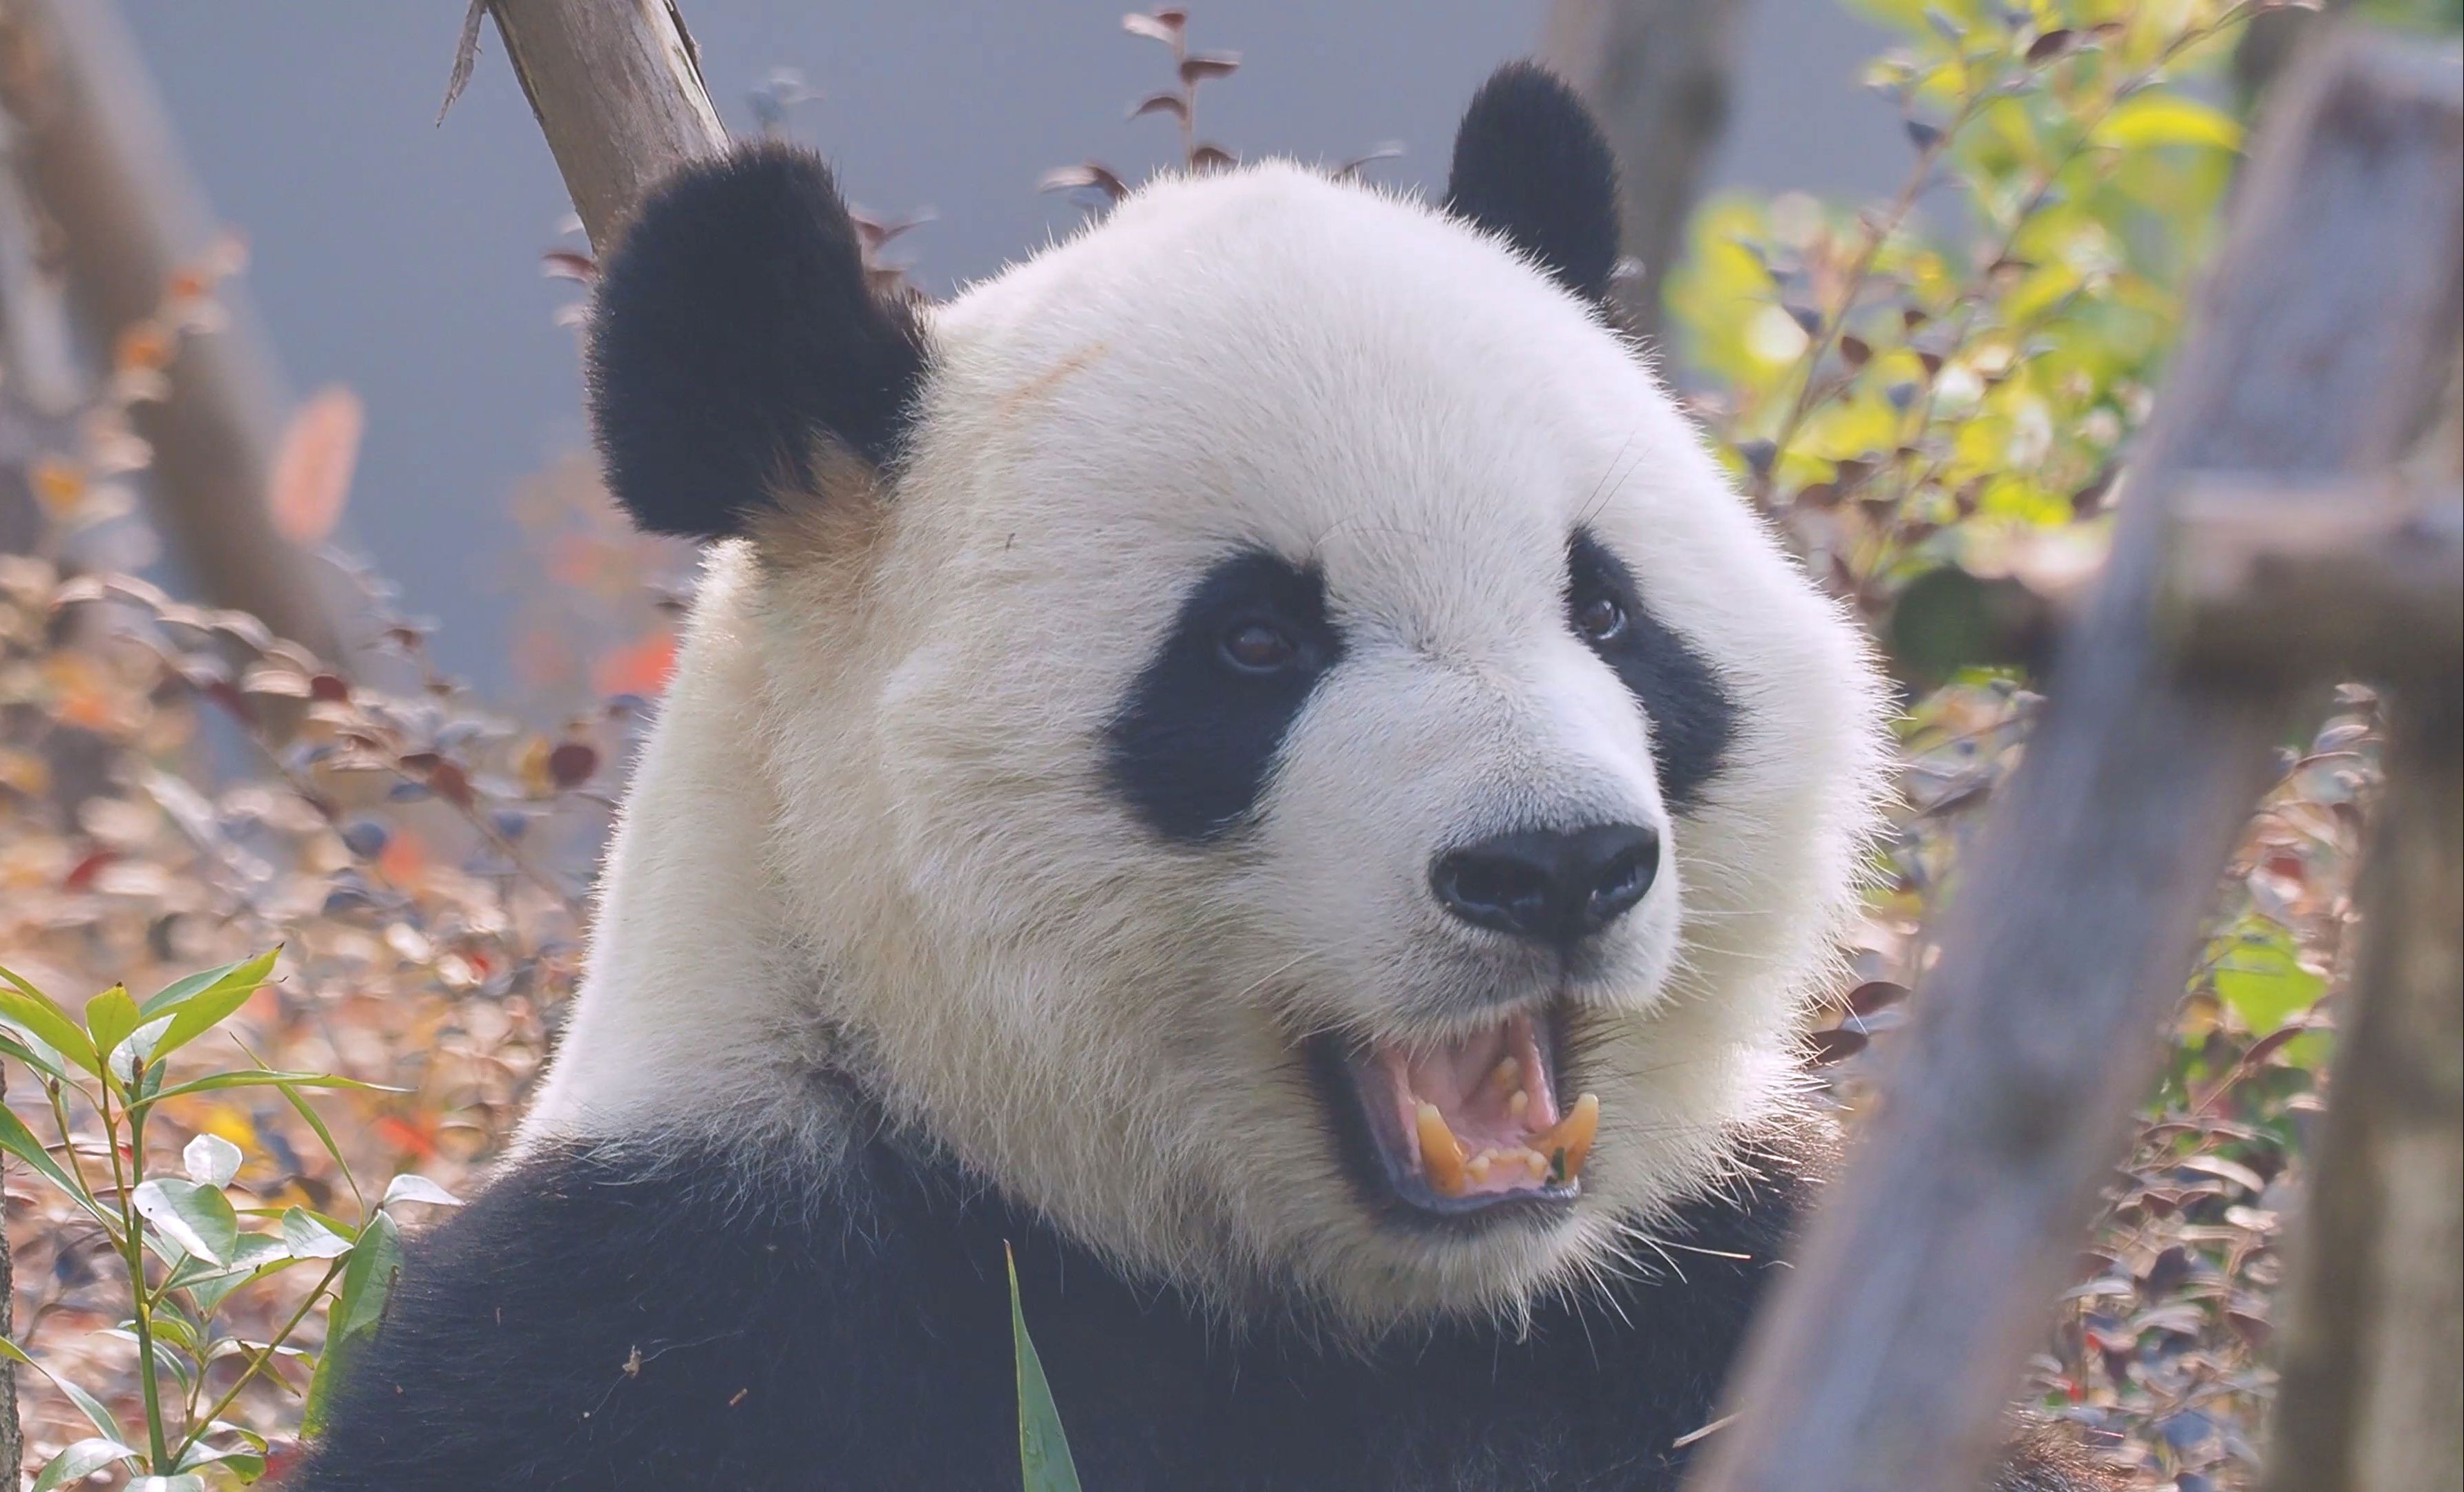 【大熊猫】【喜兰】【成都大熊猫基地】喜兰也是只高颜值的帅帅熊呢